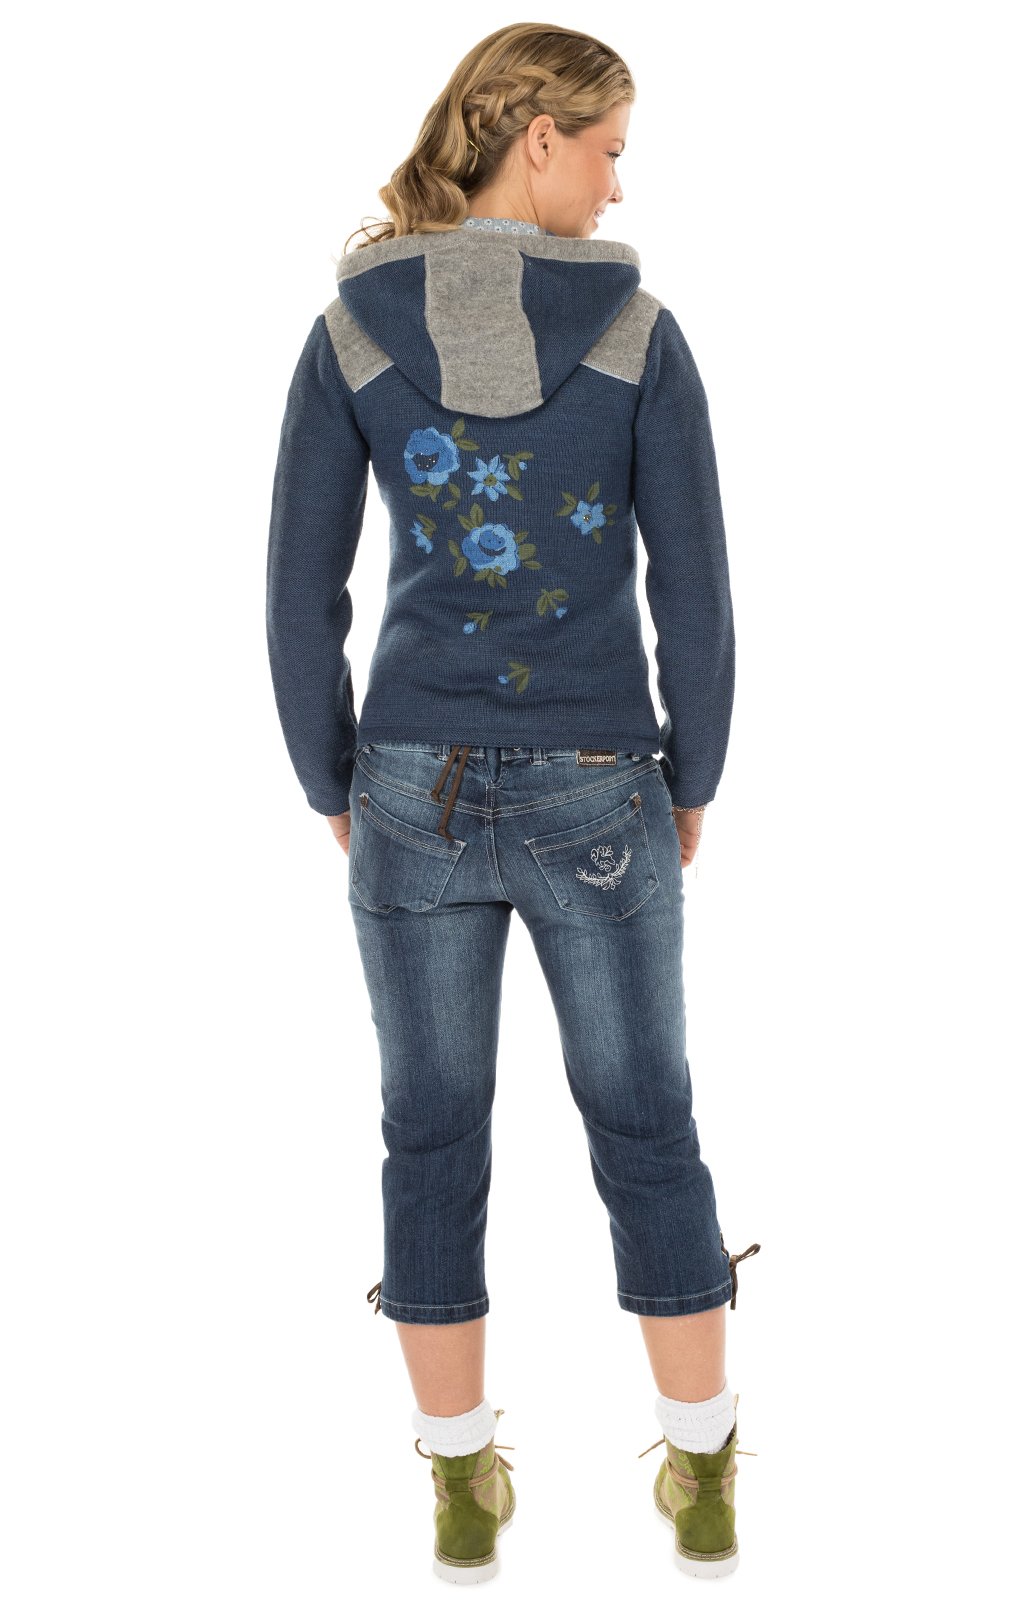 weitere Bilder von Giacca in maglia Grainet jeansblau